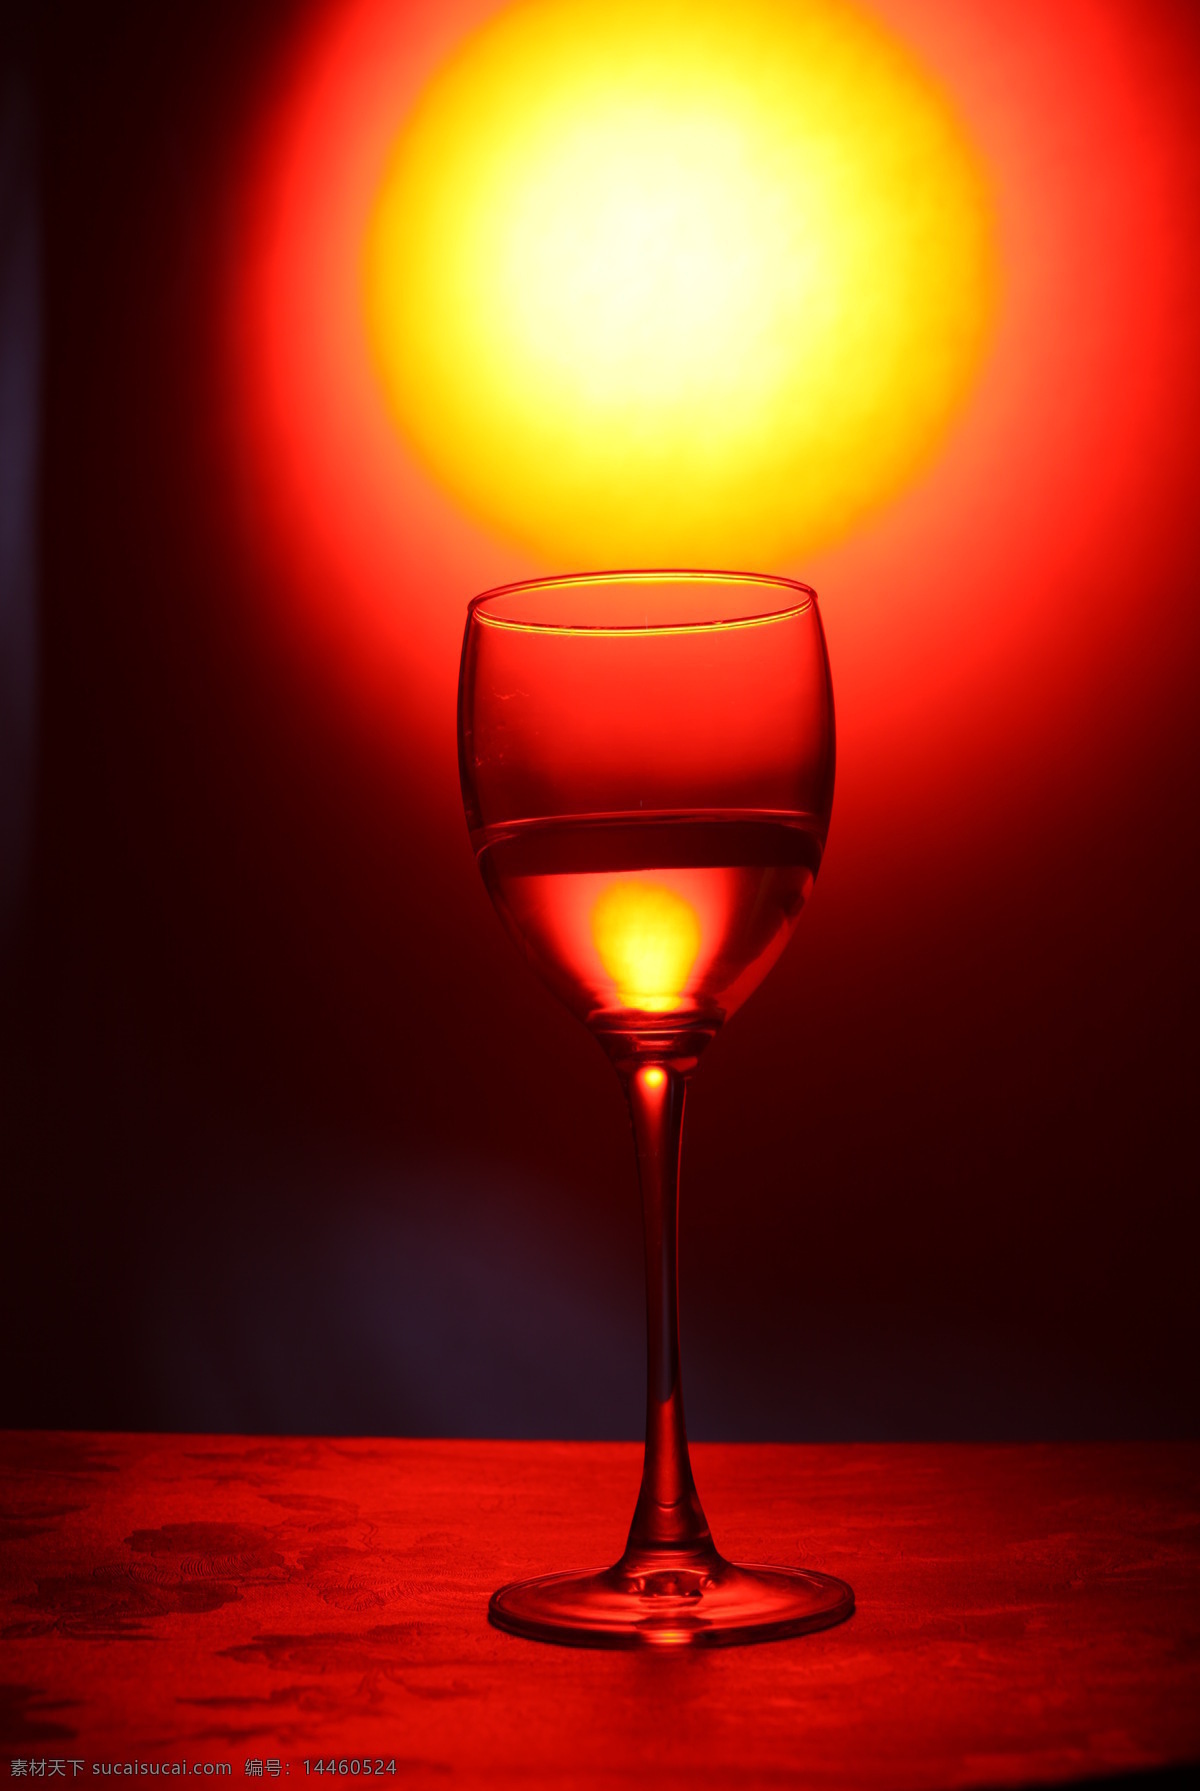 高脚杯 暖调 红酒 红色 玻璃杯 高清 大图 家居 饮料酒水 餐饮美食